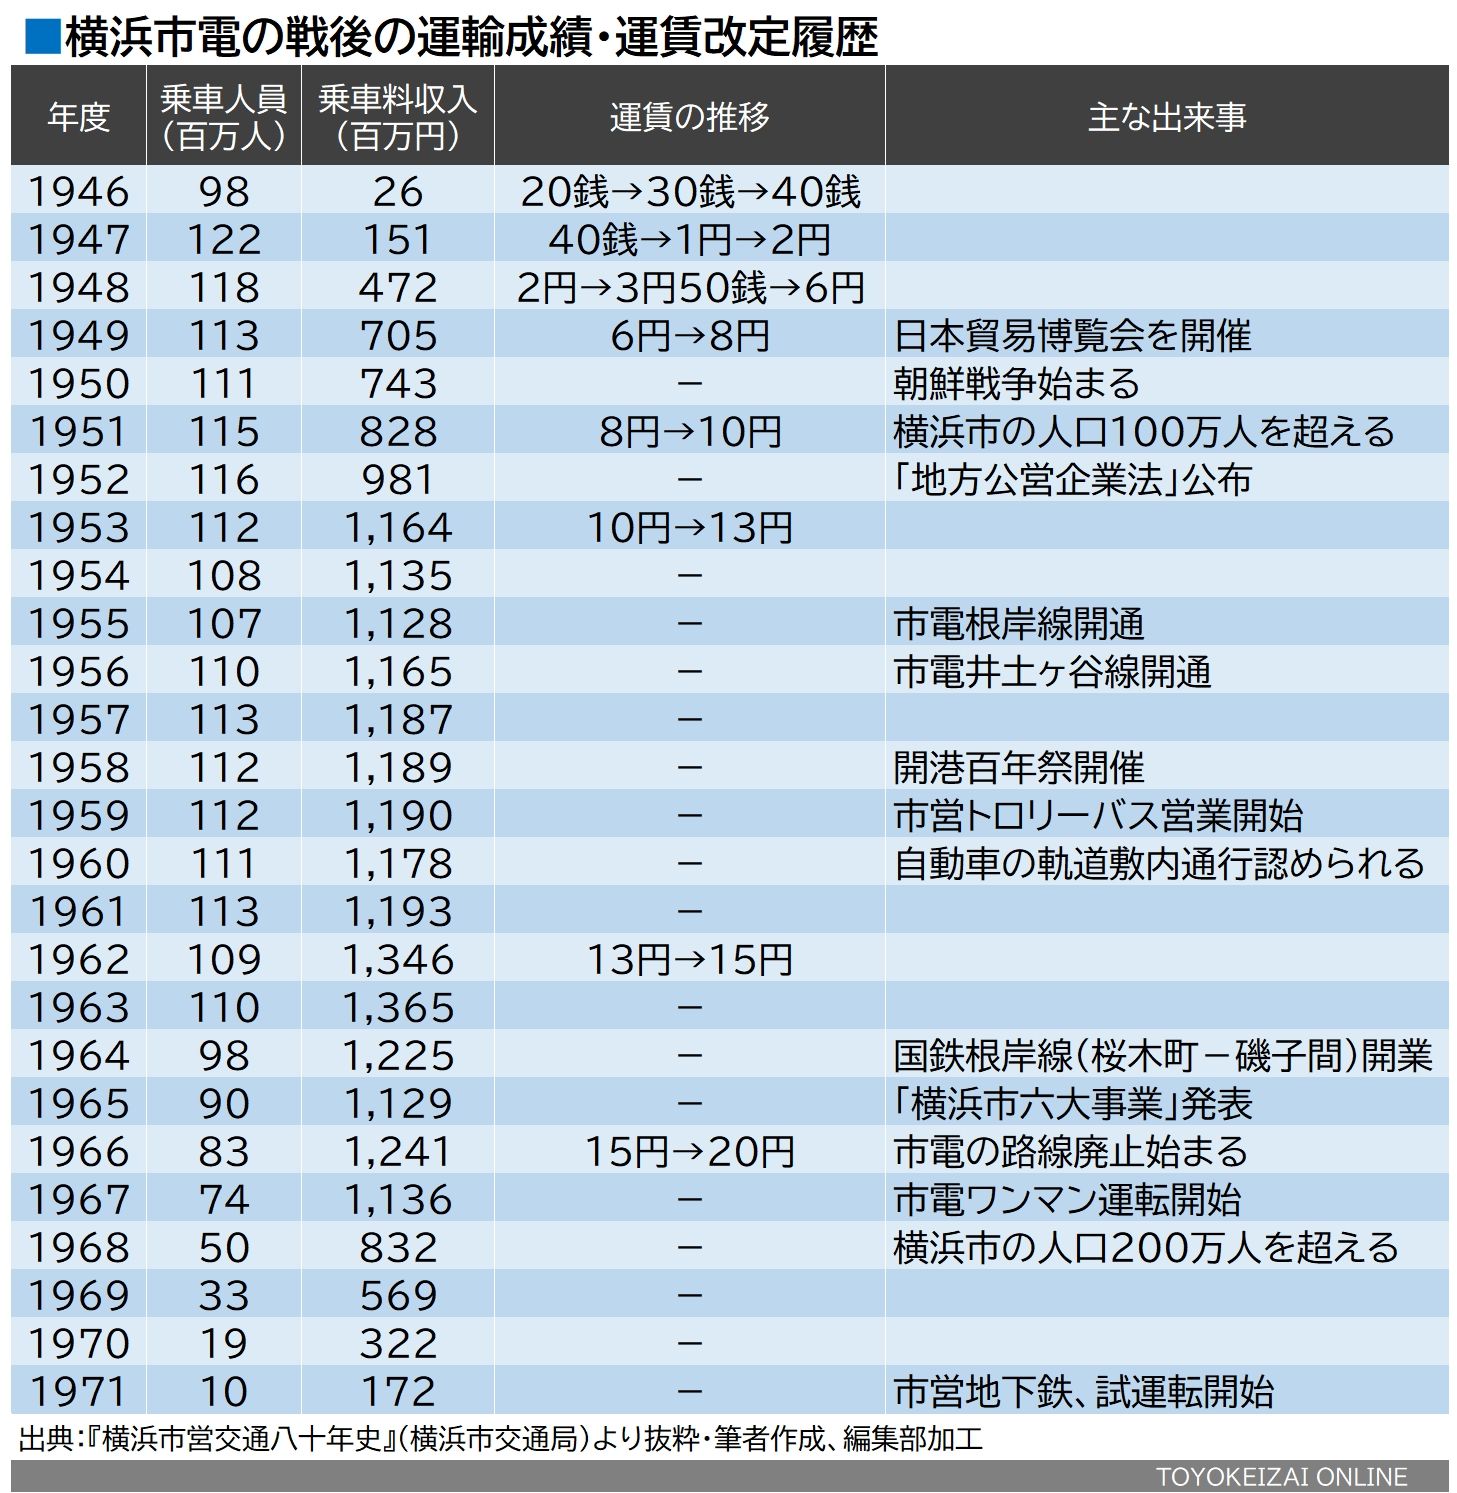 横浜市電の輸送人員と乗車料収入の推移（『横浜市営交通八十年史』から抜粋・筆者作成、編集部加工）